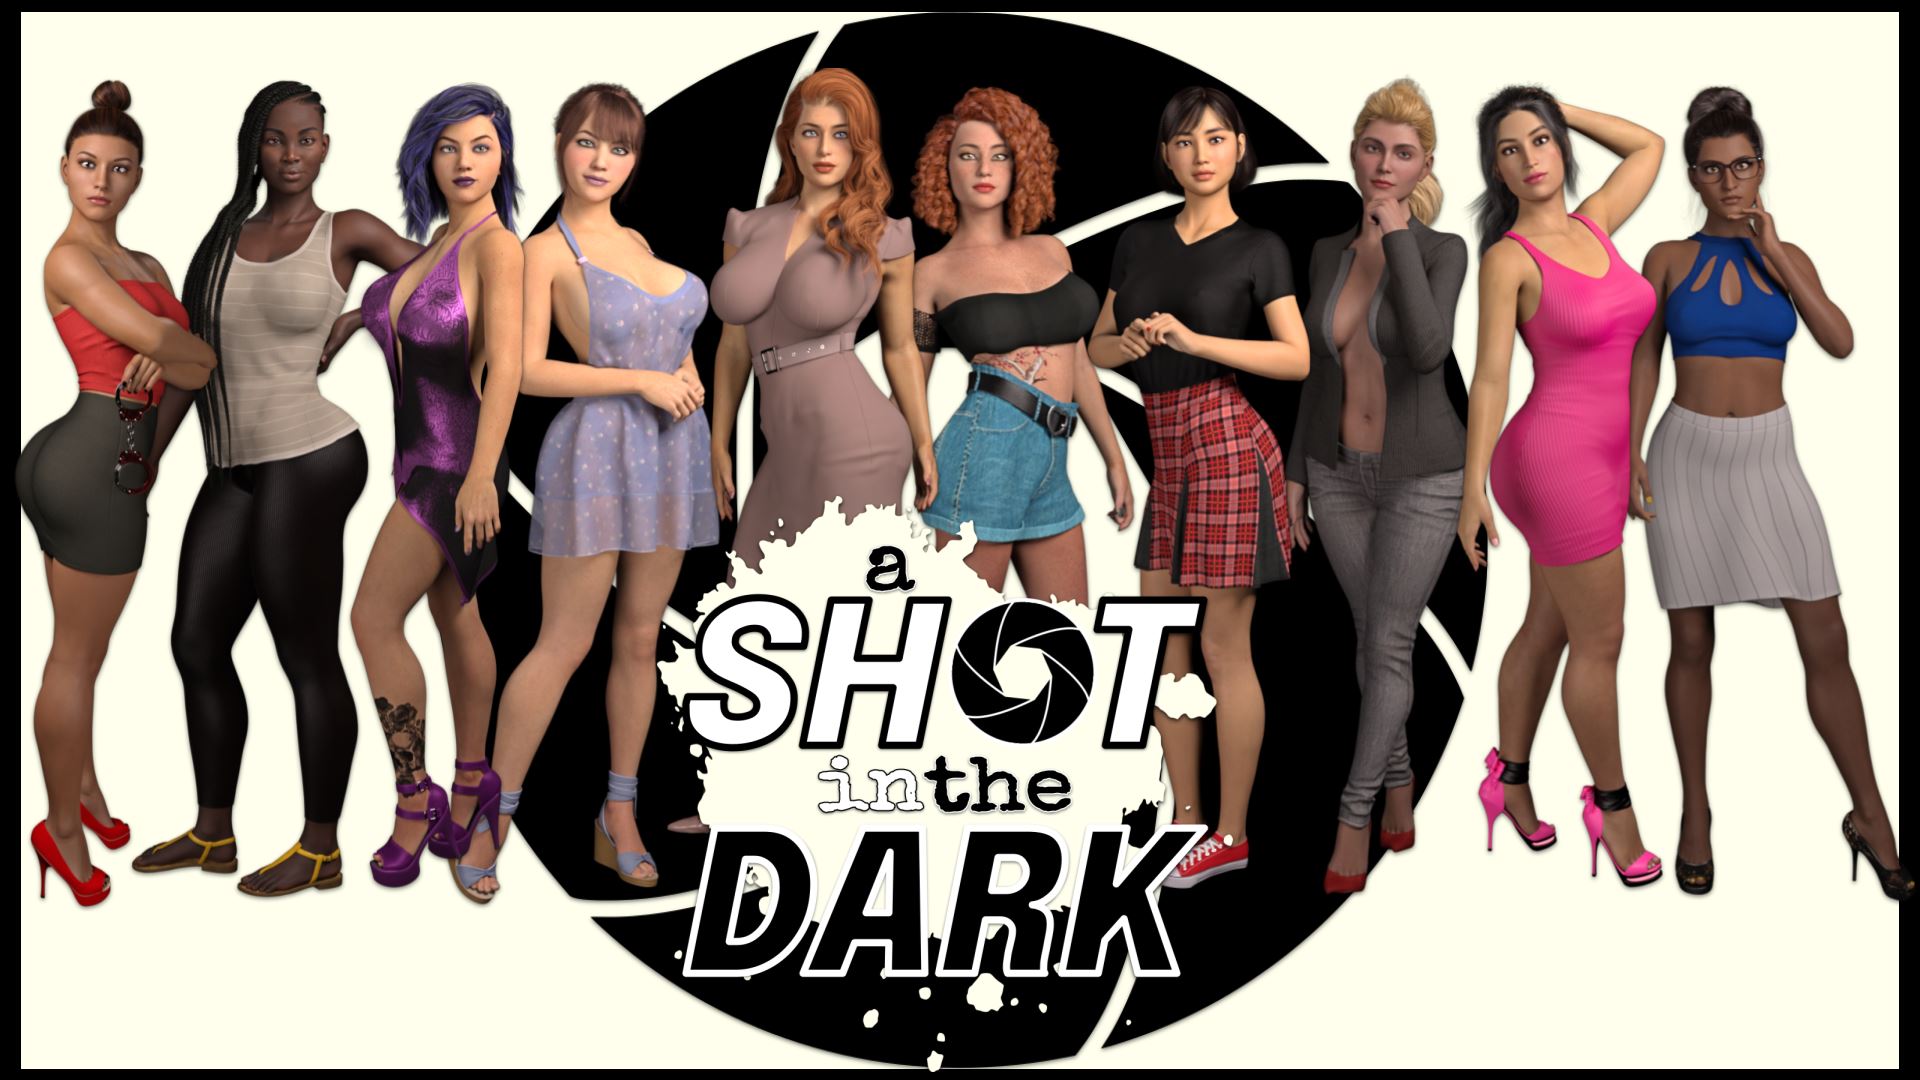 Ren'Py] A Shot in the Dark - v0.25 by ViM Studios 18+ Adult xxx ...